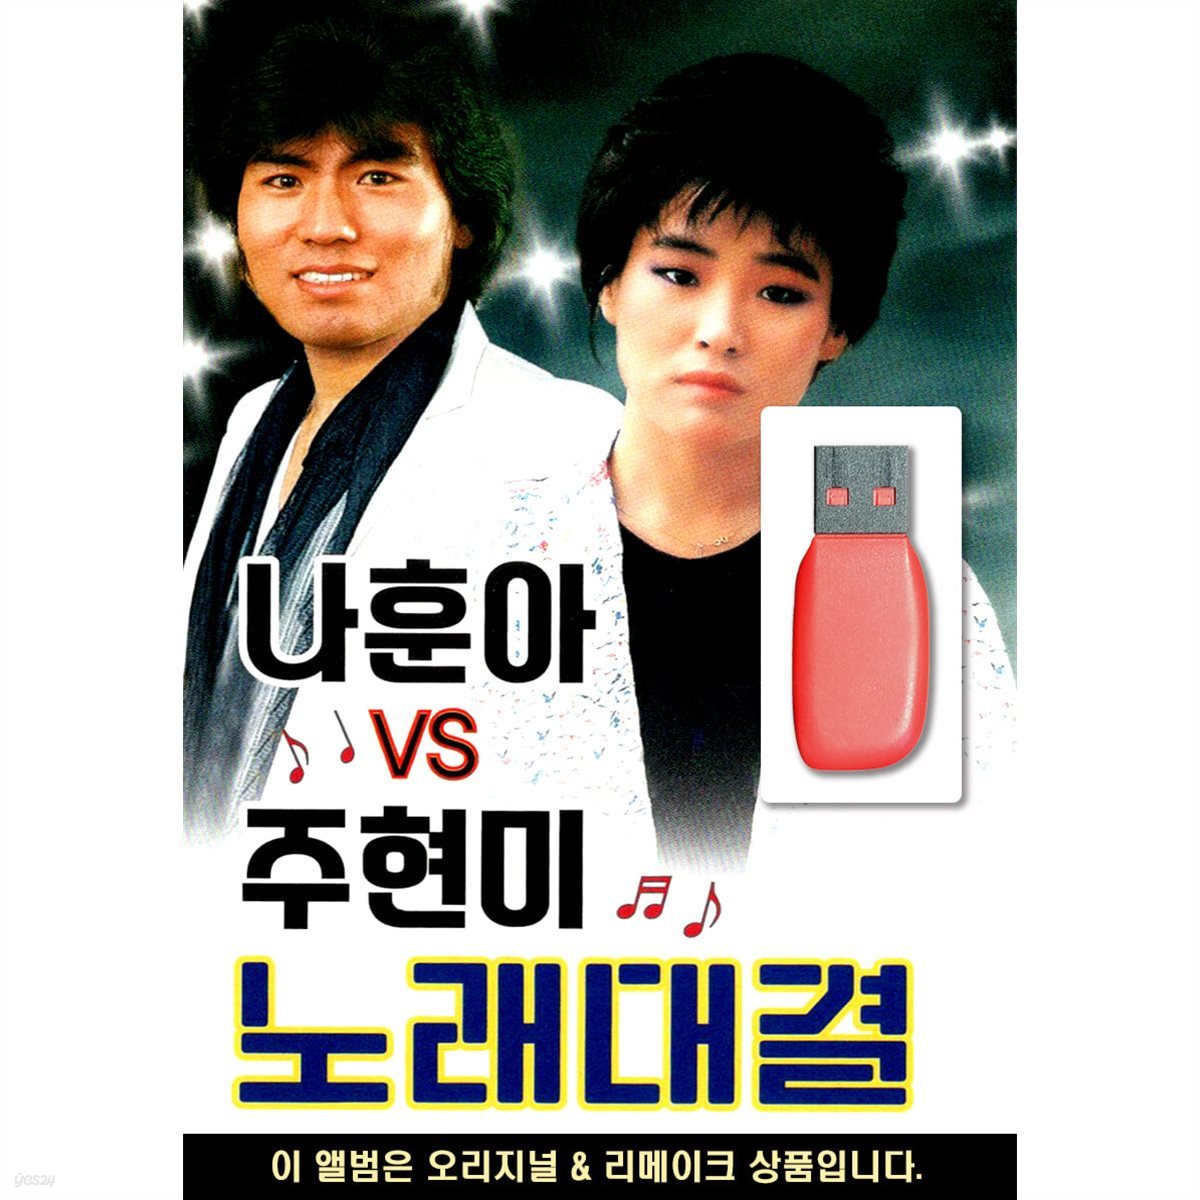 USB 나훈아 VS 주현미 노래대결